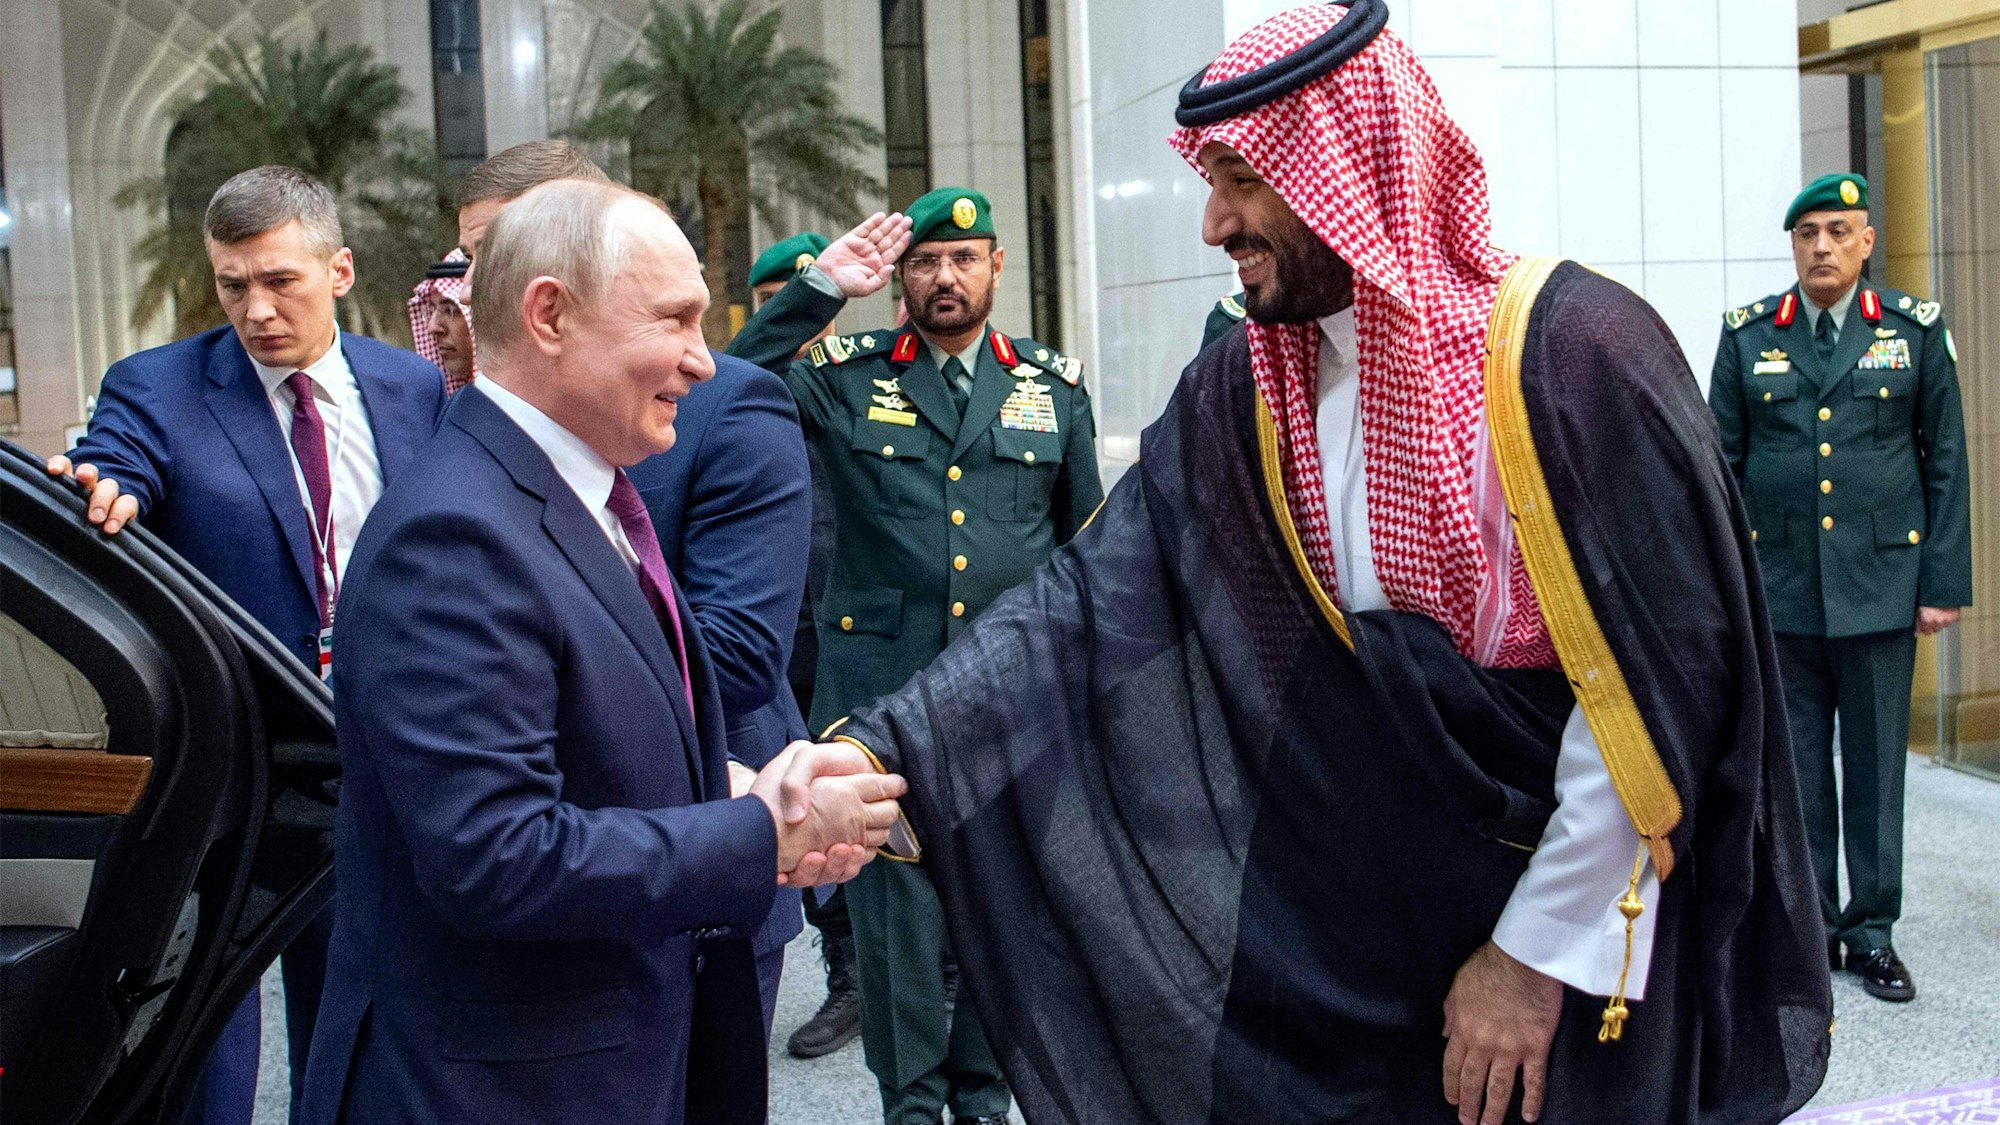 Wladimir Putin beim Handschlag mit Kronprinz Mohammed bin Salman nach seiner Ankunft in Saudi-Arabien. Zuvor hatte der Kremlchef Abu Dhabi besucht.